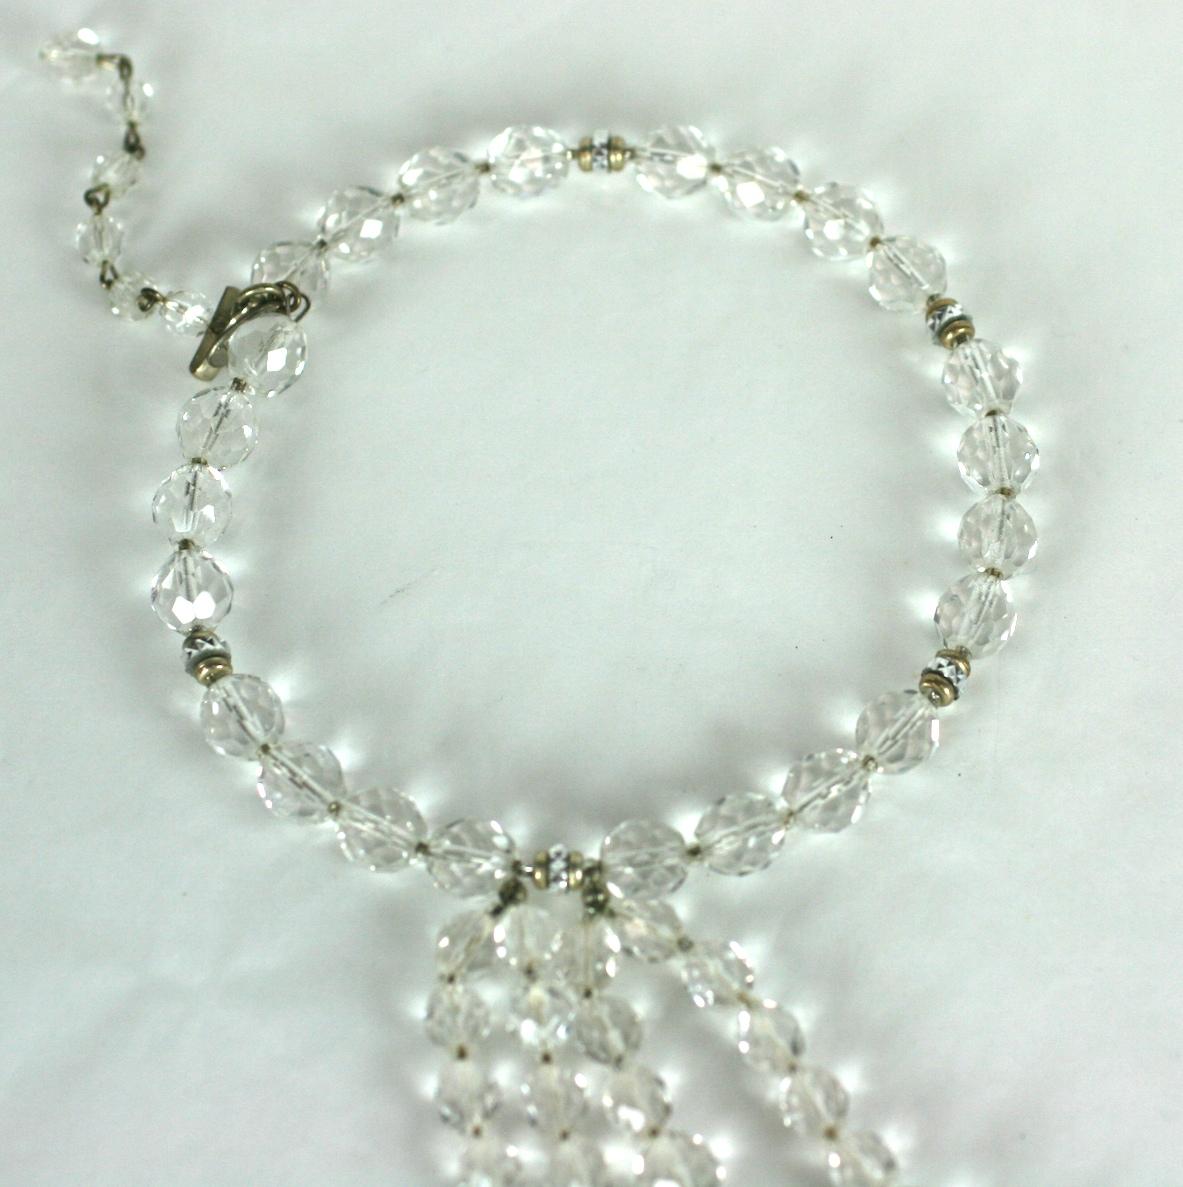 Collier pendentif spectaculaire en cristal Miriam Haskell dans le goût Art Déco des perles et des gouttes de cristal taillé à la main de forme vari. Il est rehaussé par des sphères et des rondelles de strass pavées de cristal. Le collier est enfilé